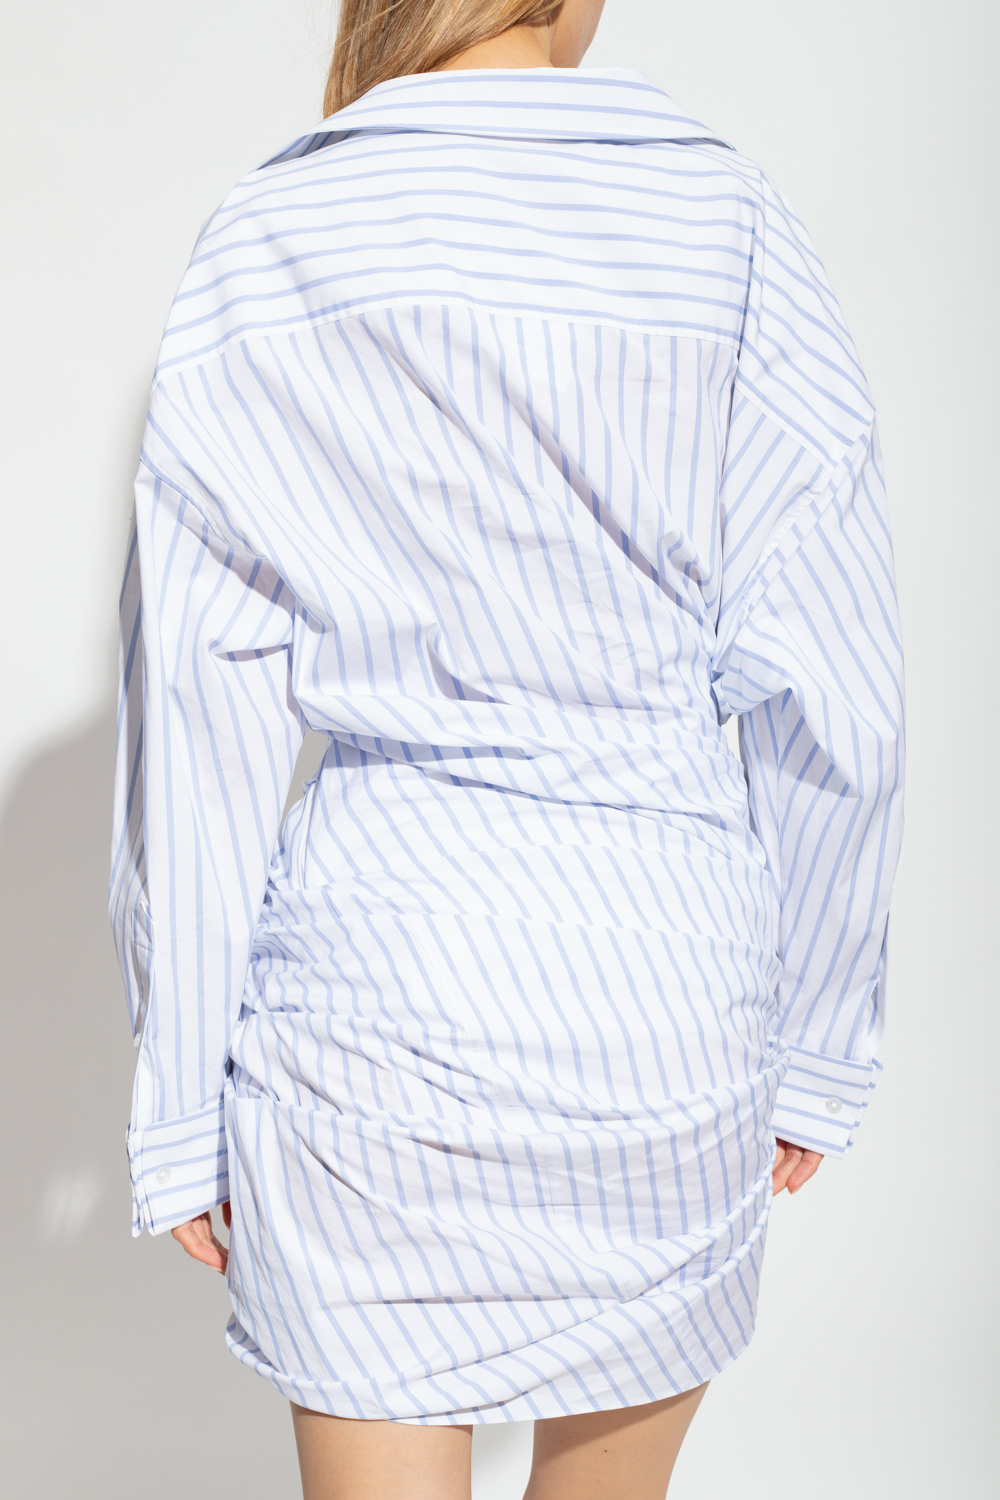 Alexander Wang Striped dress